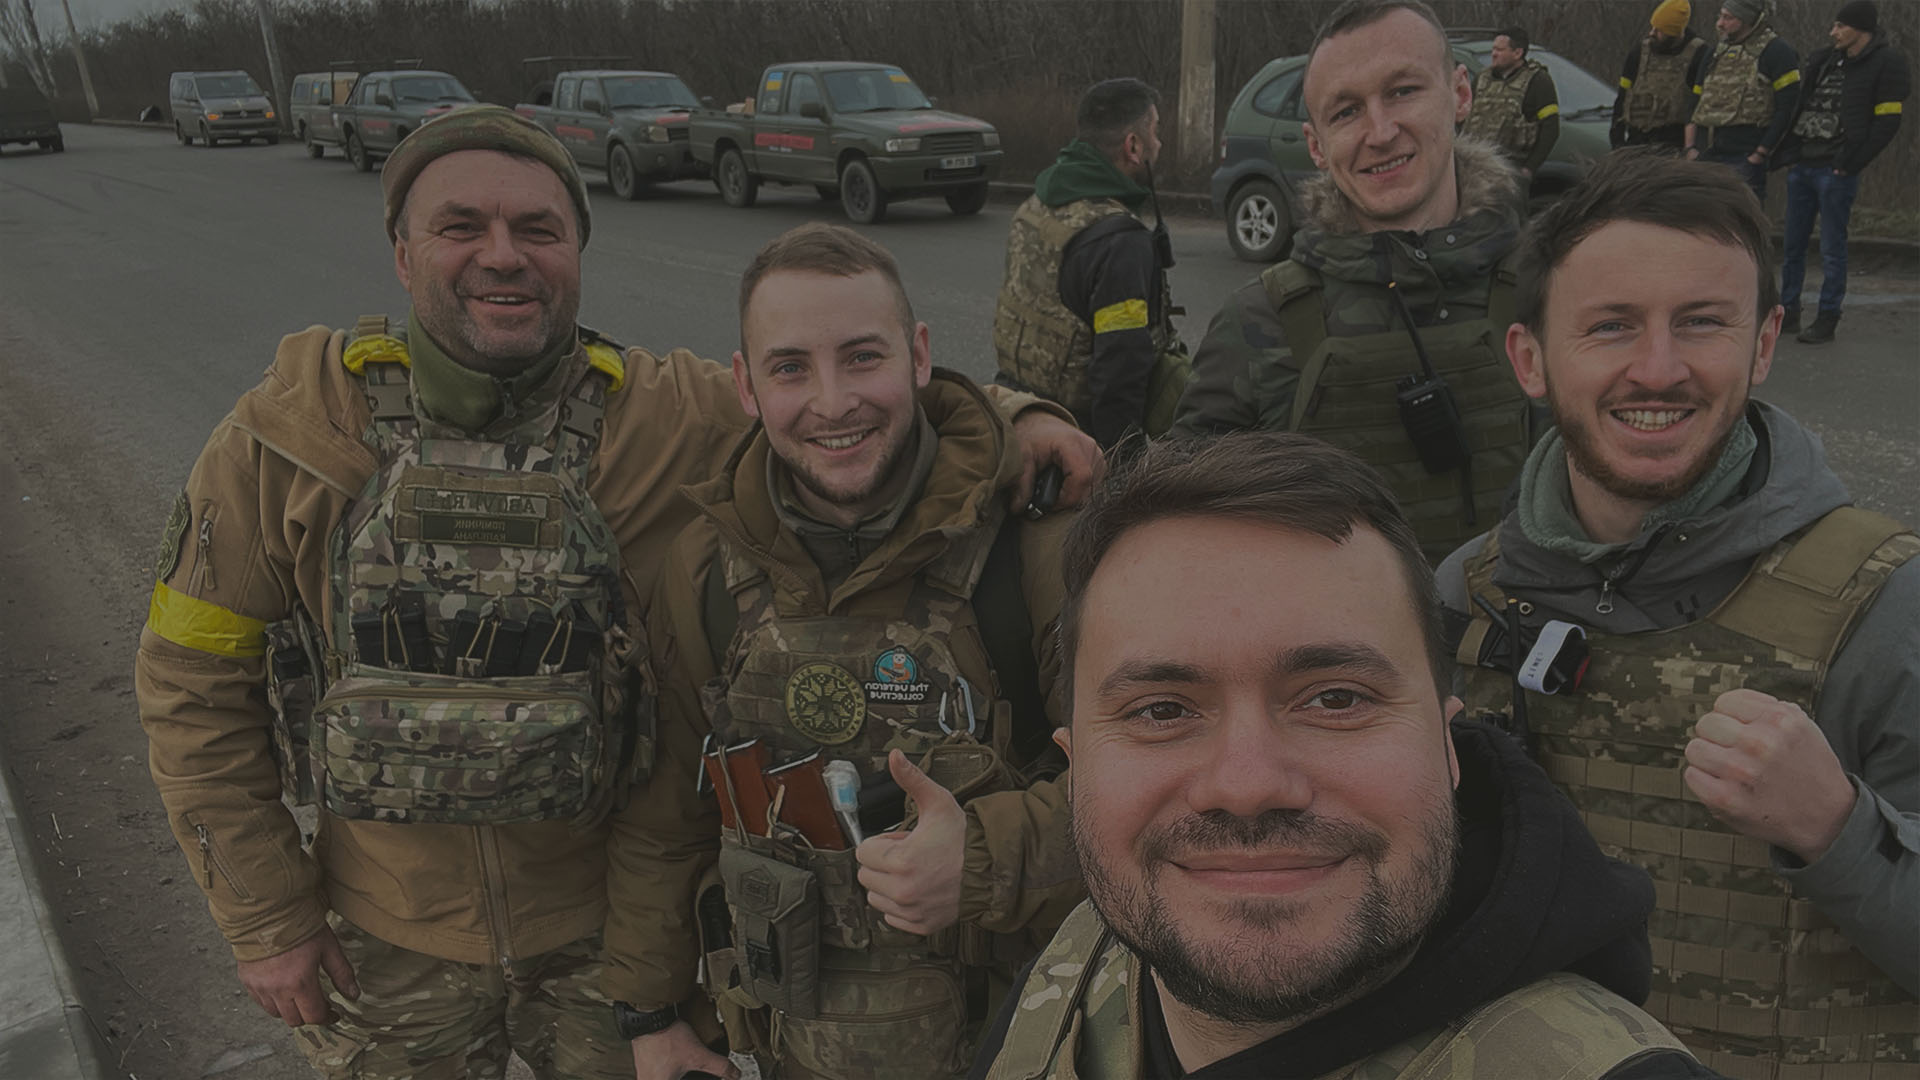 Des volontaires de Car for Ukraine faisant un selfie avec des soldats ukrainiens reconnaissants, derrière eux se trouvent des voitures données.